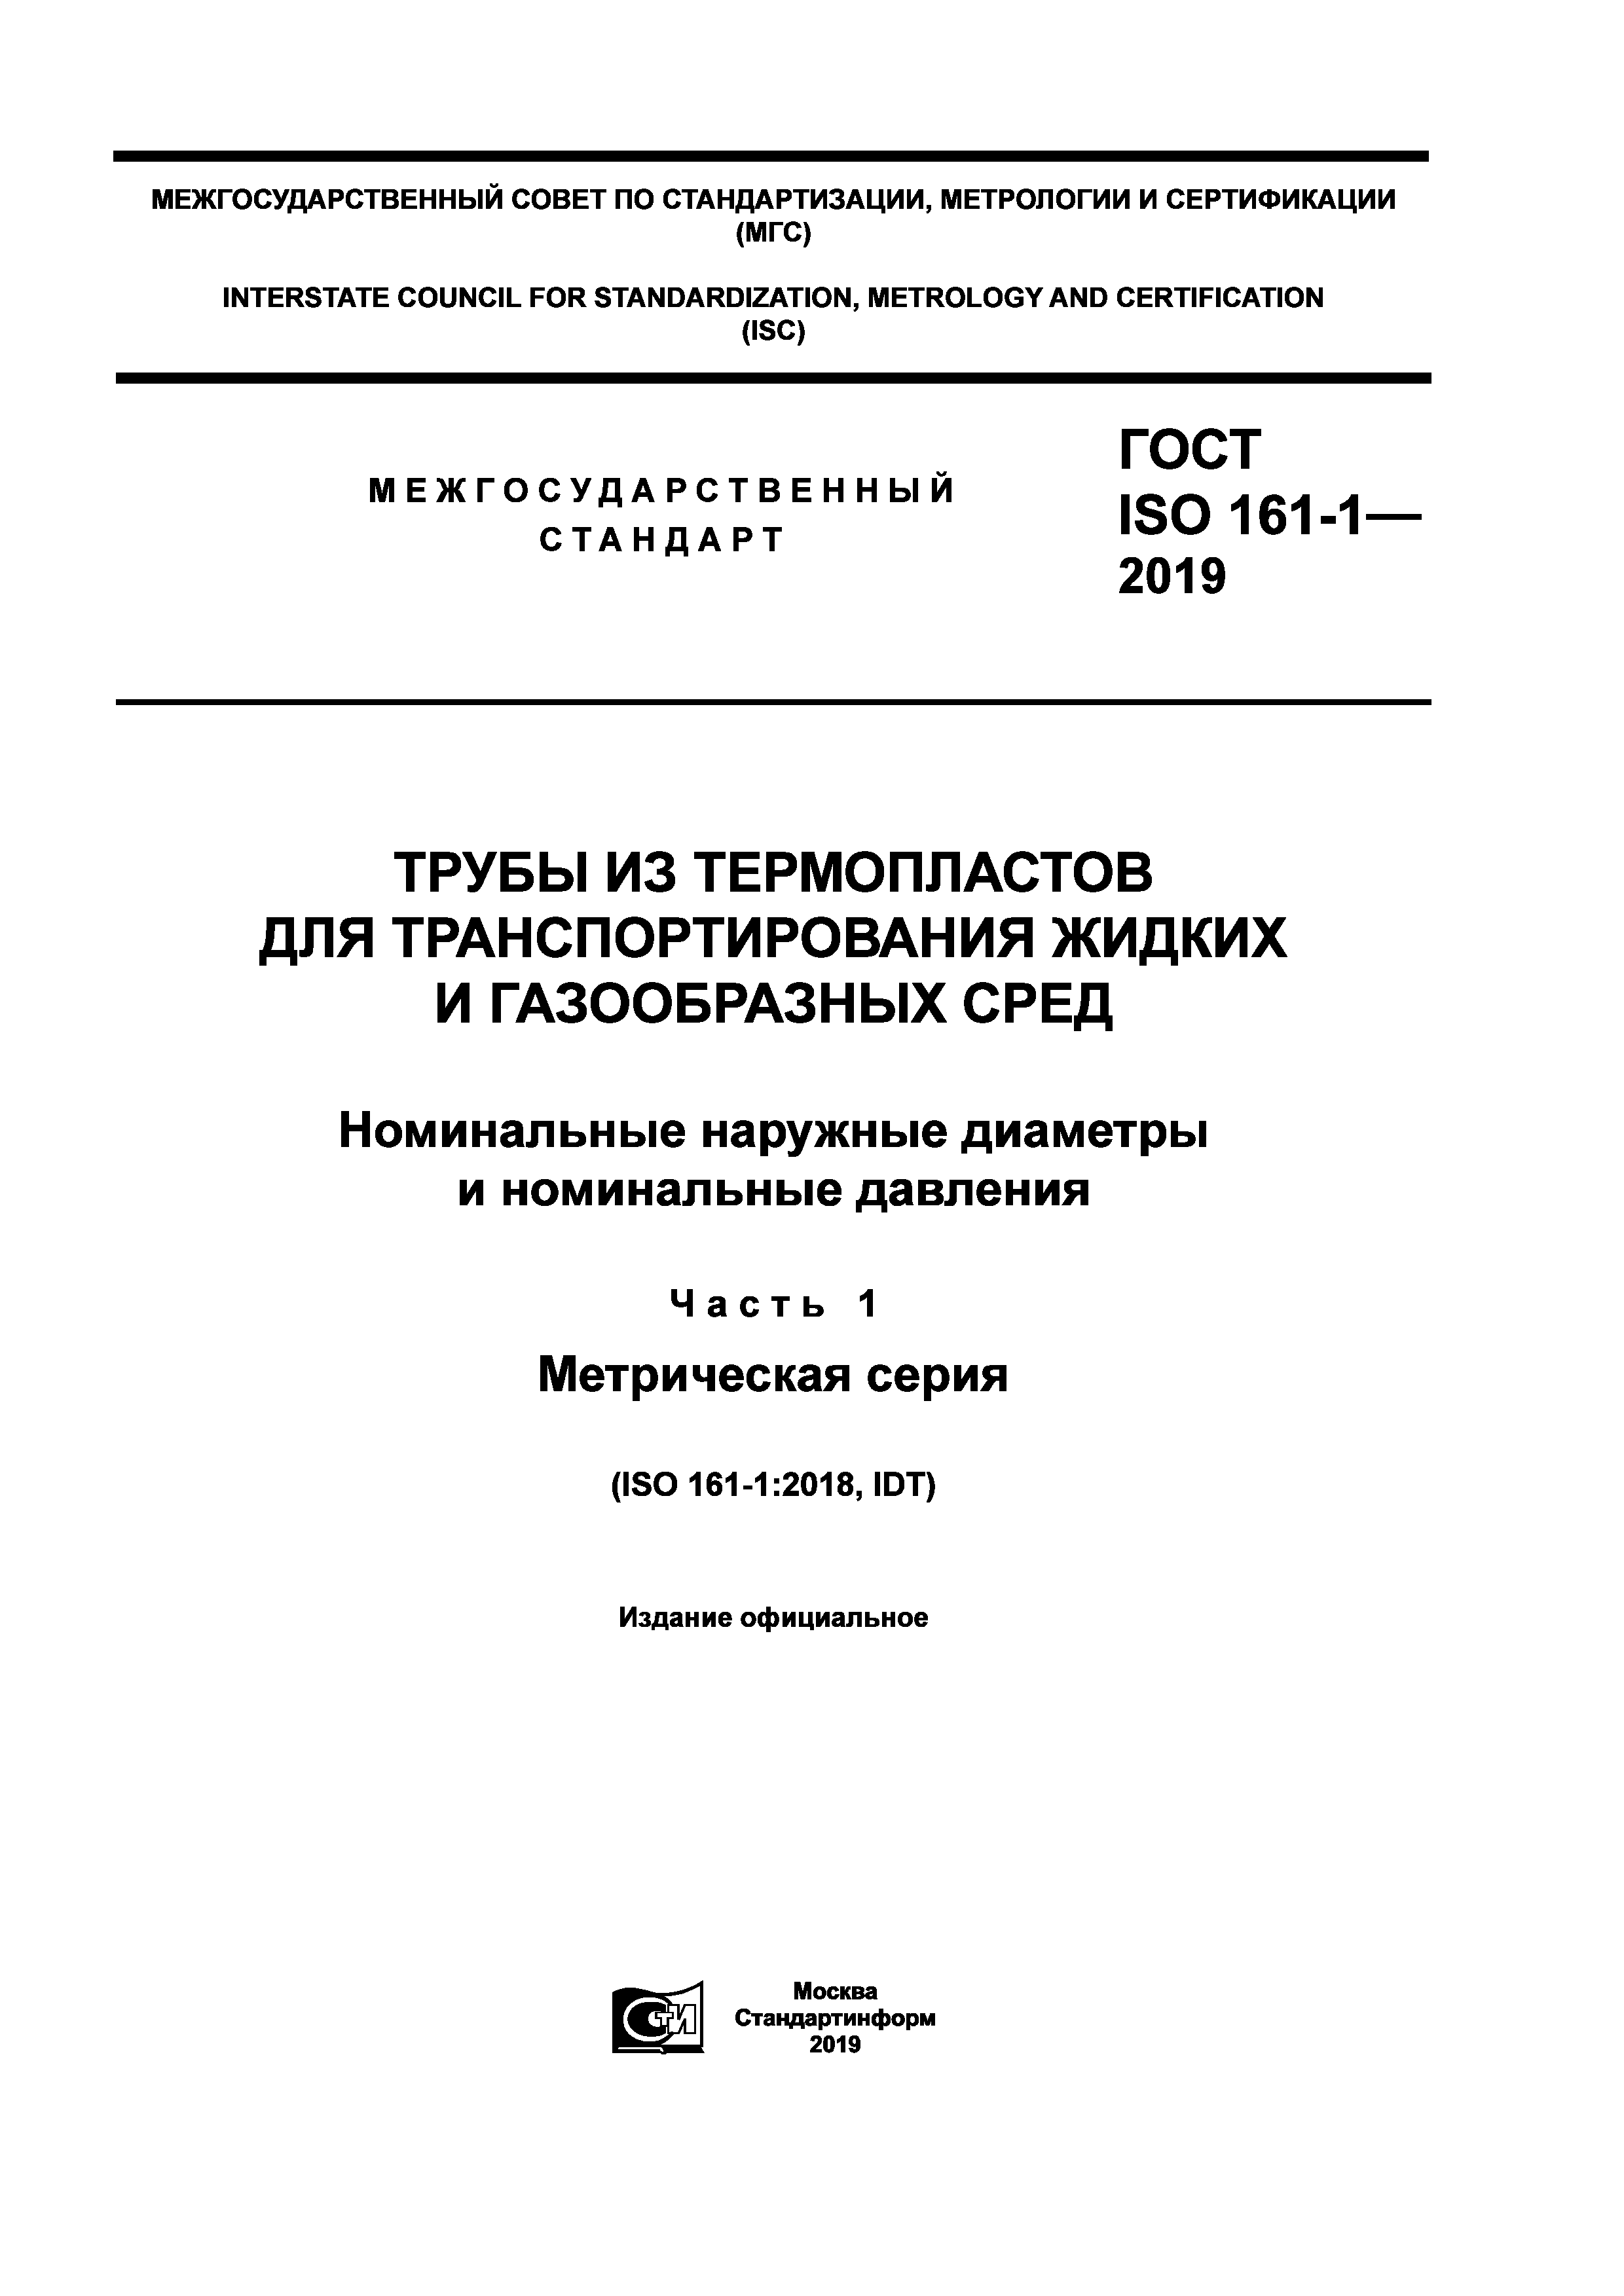 ГОСТ ISO 161-1-2019